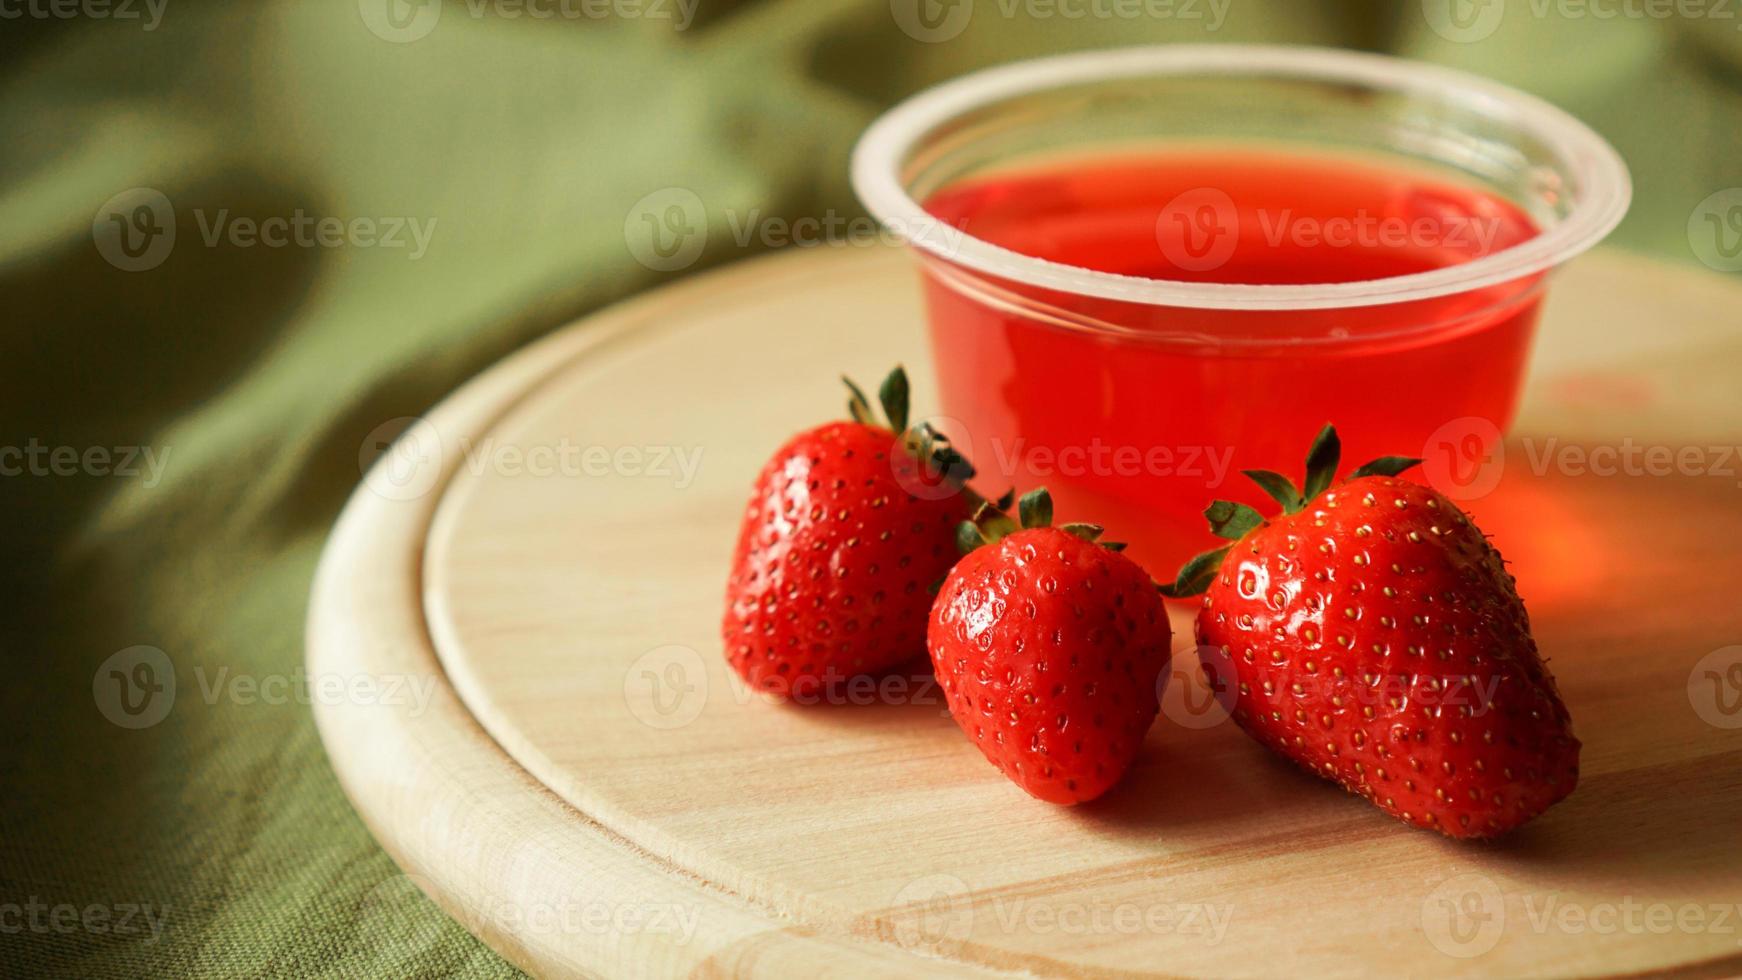 geléia de morango vermelha com frutas vermelhas em um recipiente de plástico foto